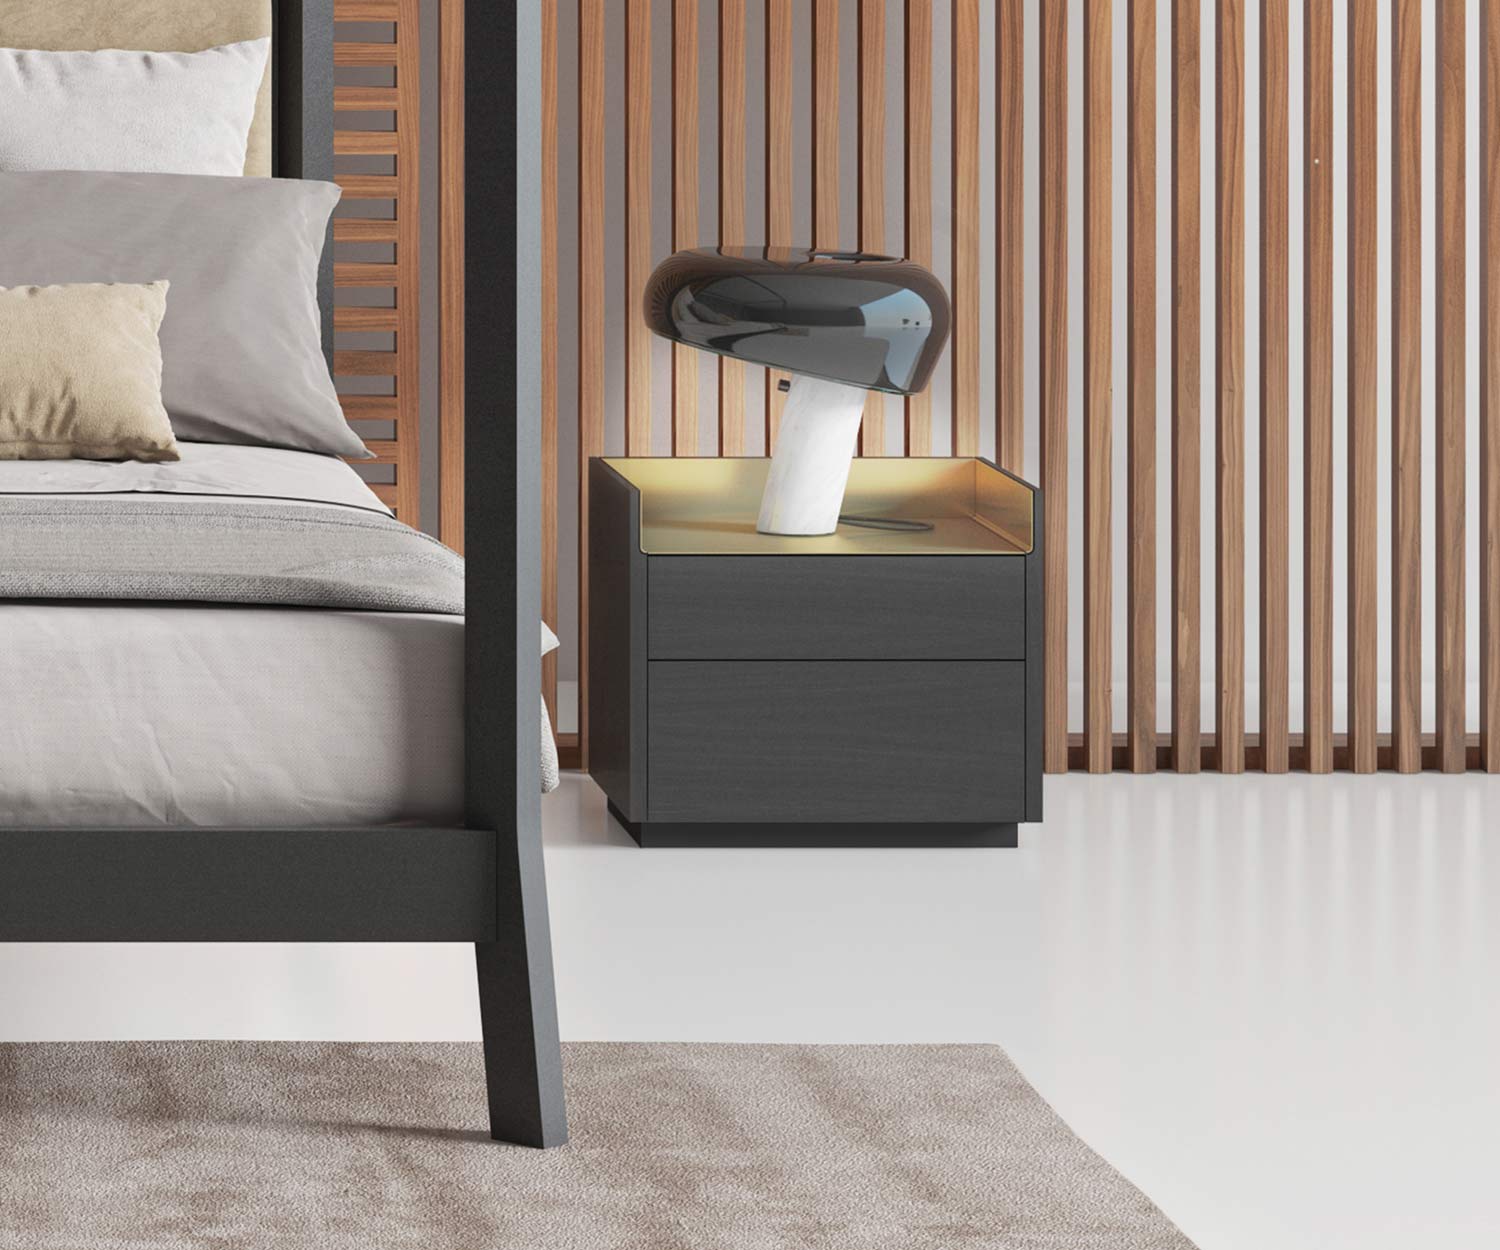 Exklusiver Design Nachttisch mit Nachttischlampe neben Bett im Schlafzimmer furniert